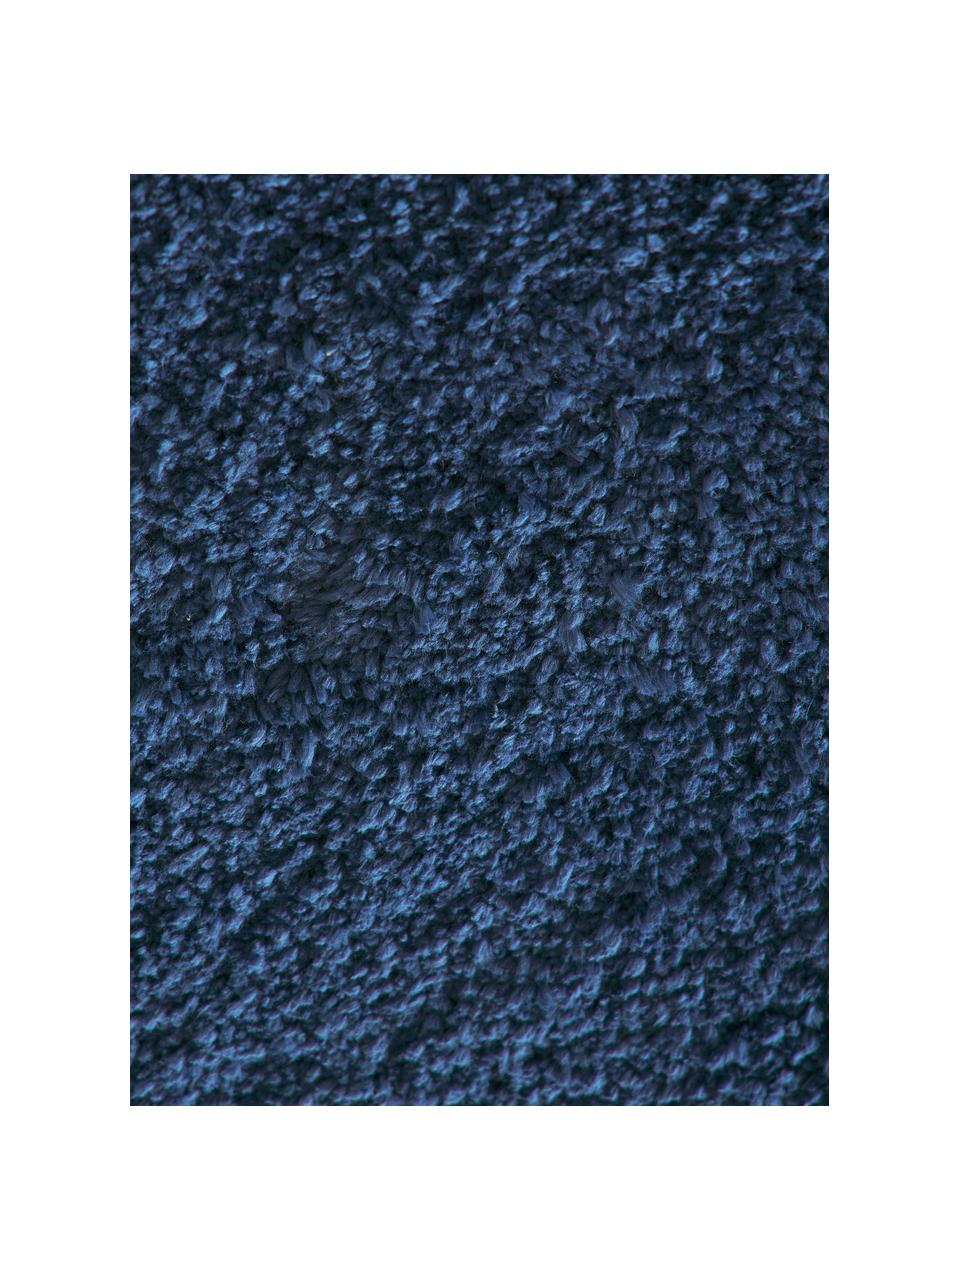 Puszysty chodnik z długim włosiem Leighton, Ciemny niebieski, S 80 x D 200 cm